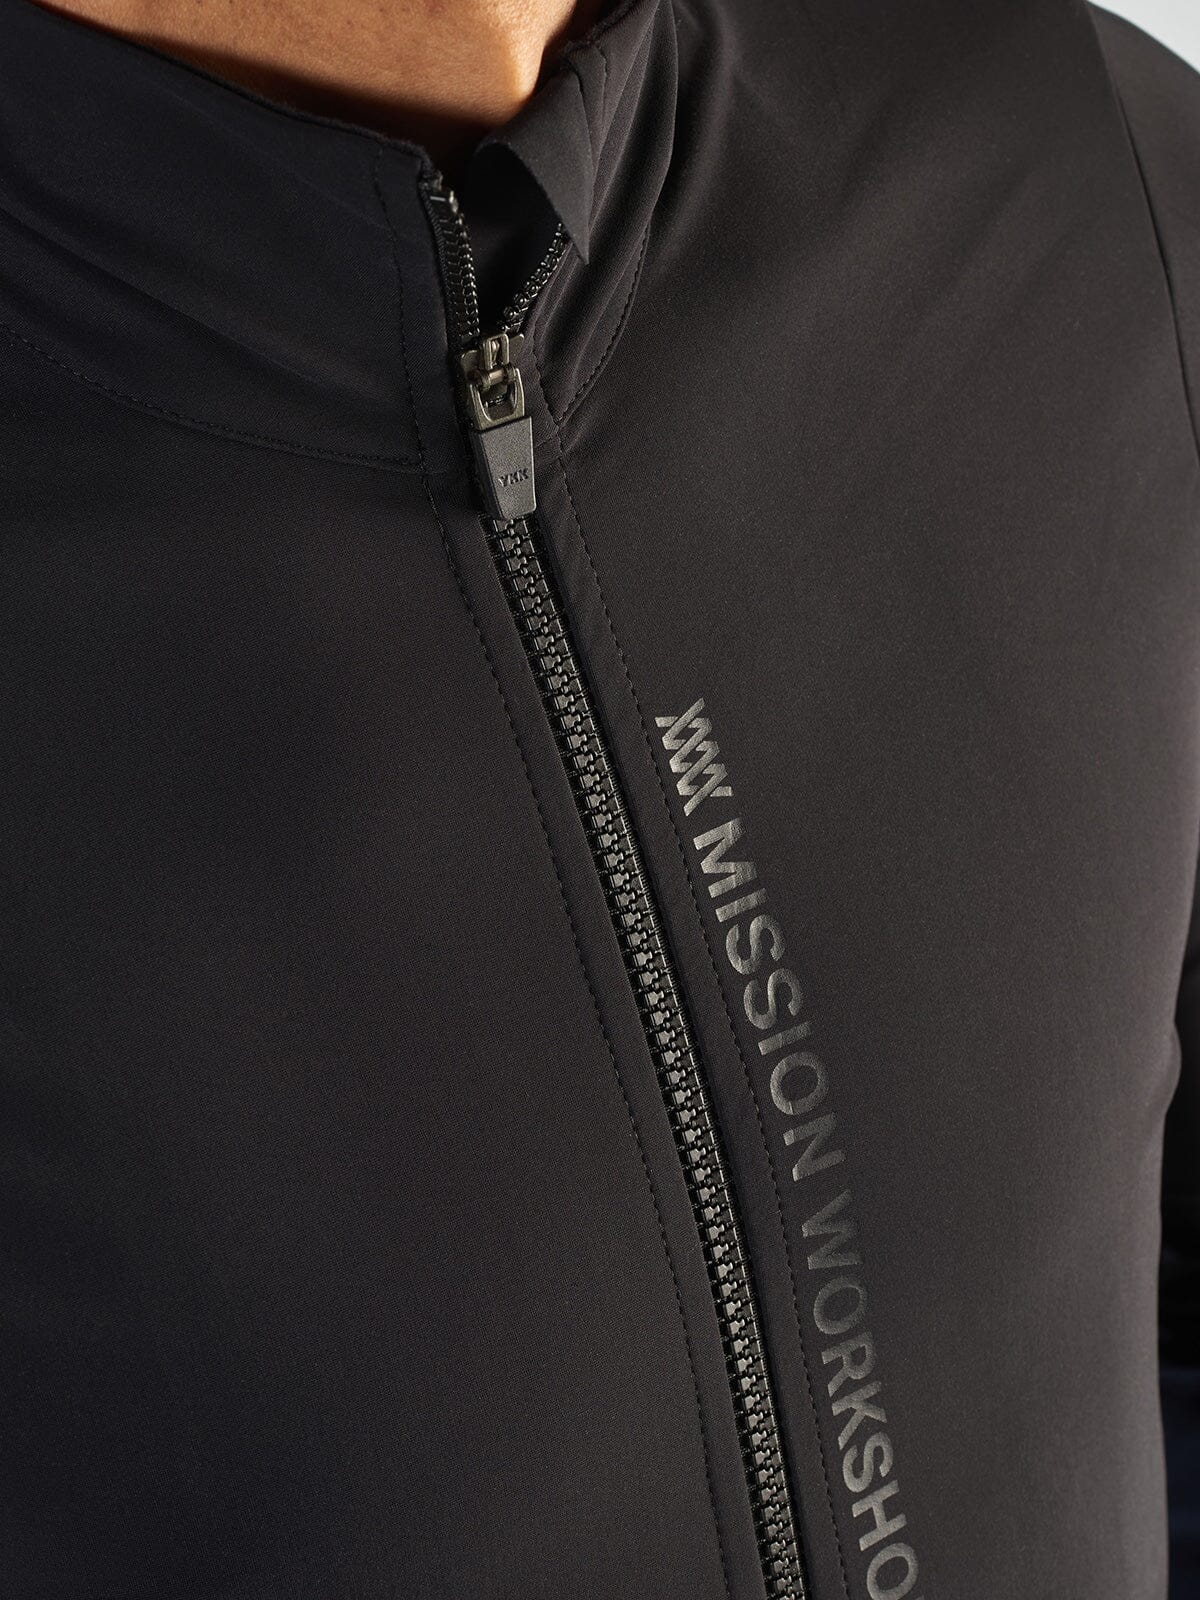 Range Jacket Men's by Mission Workshop - Weatherproof Bags & Technical Apparel - San Francisco & Los Angeles - Construit pour durer - Garanti pour toujours